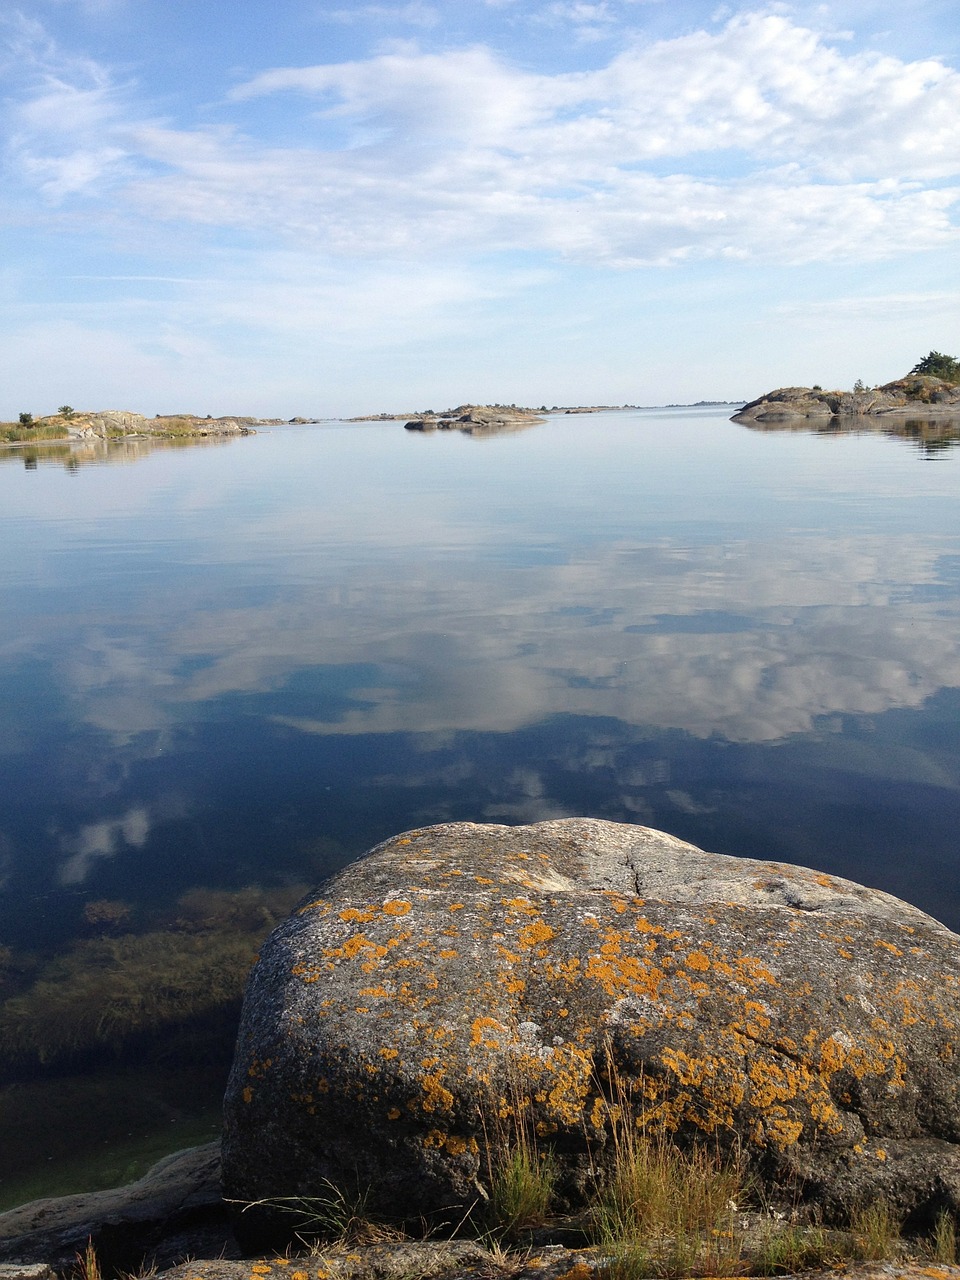 kavlugnt lull the stockholm archipelago free photo